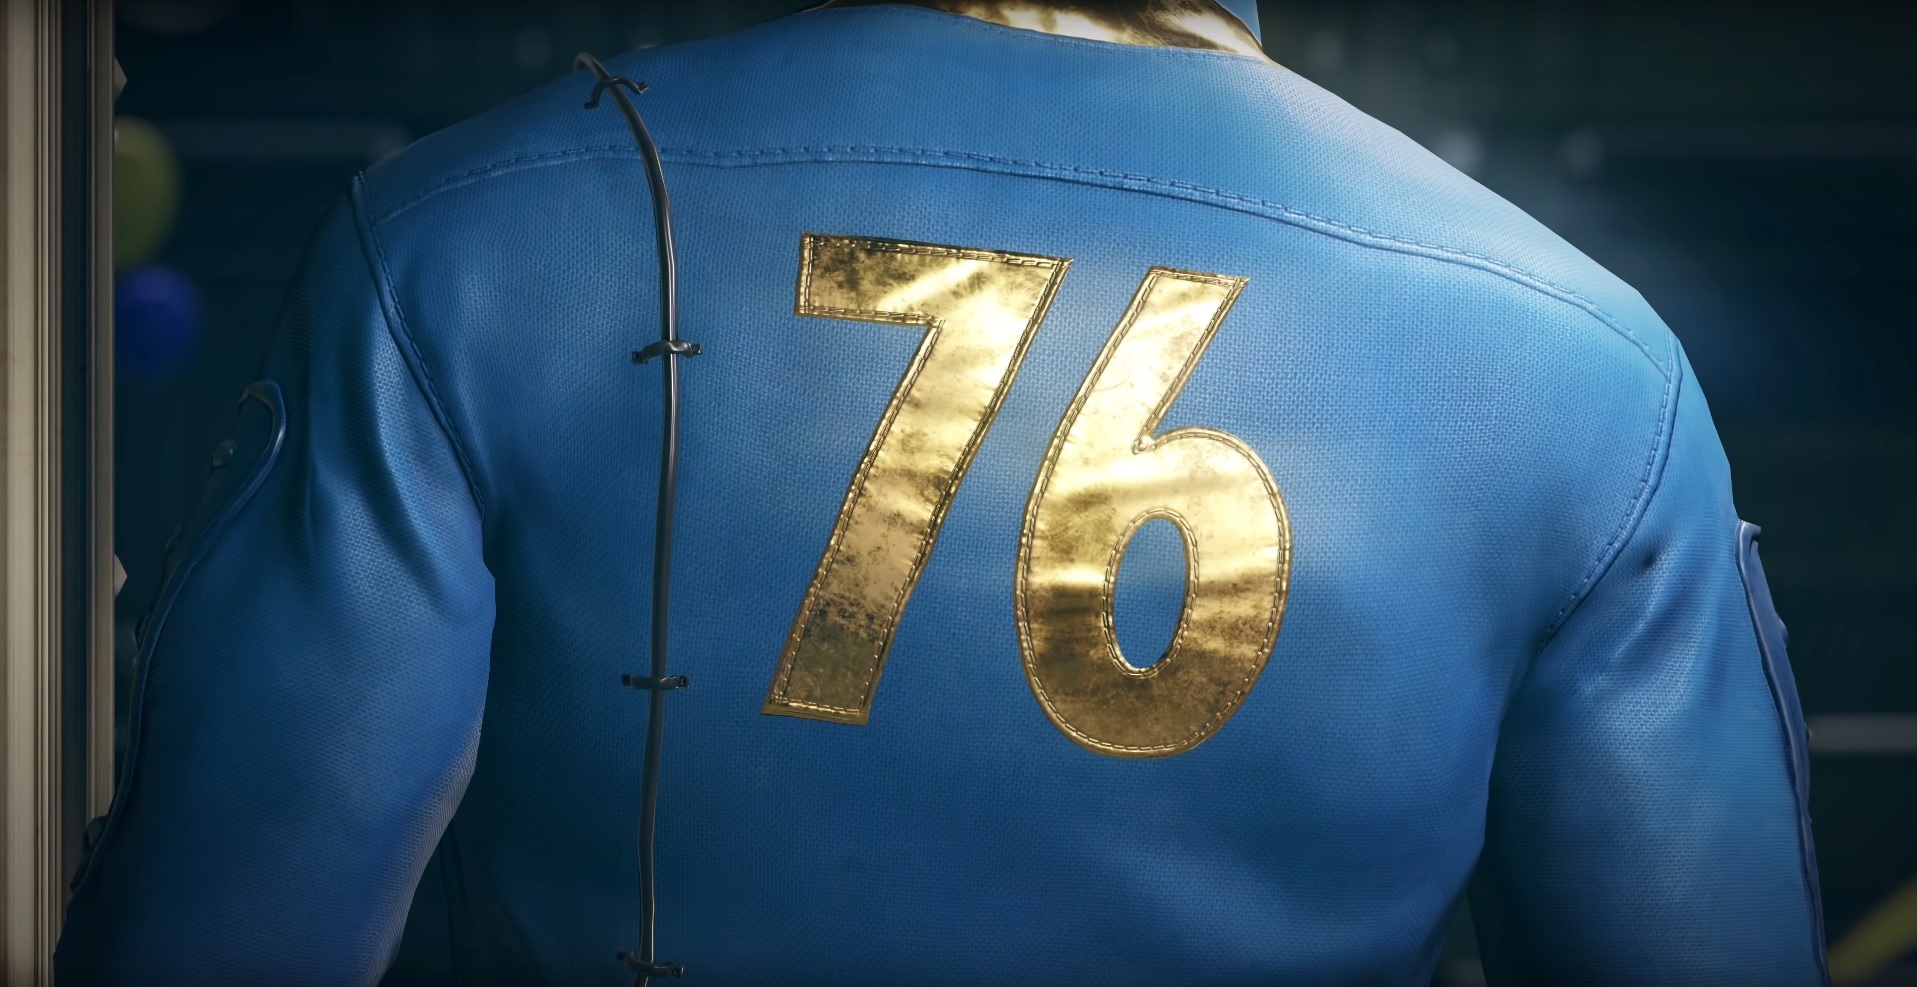 Fallout – Bethesda will Spiele nur noch von eigenen Studios entwickeln lassen